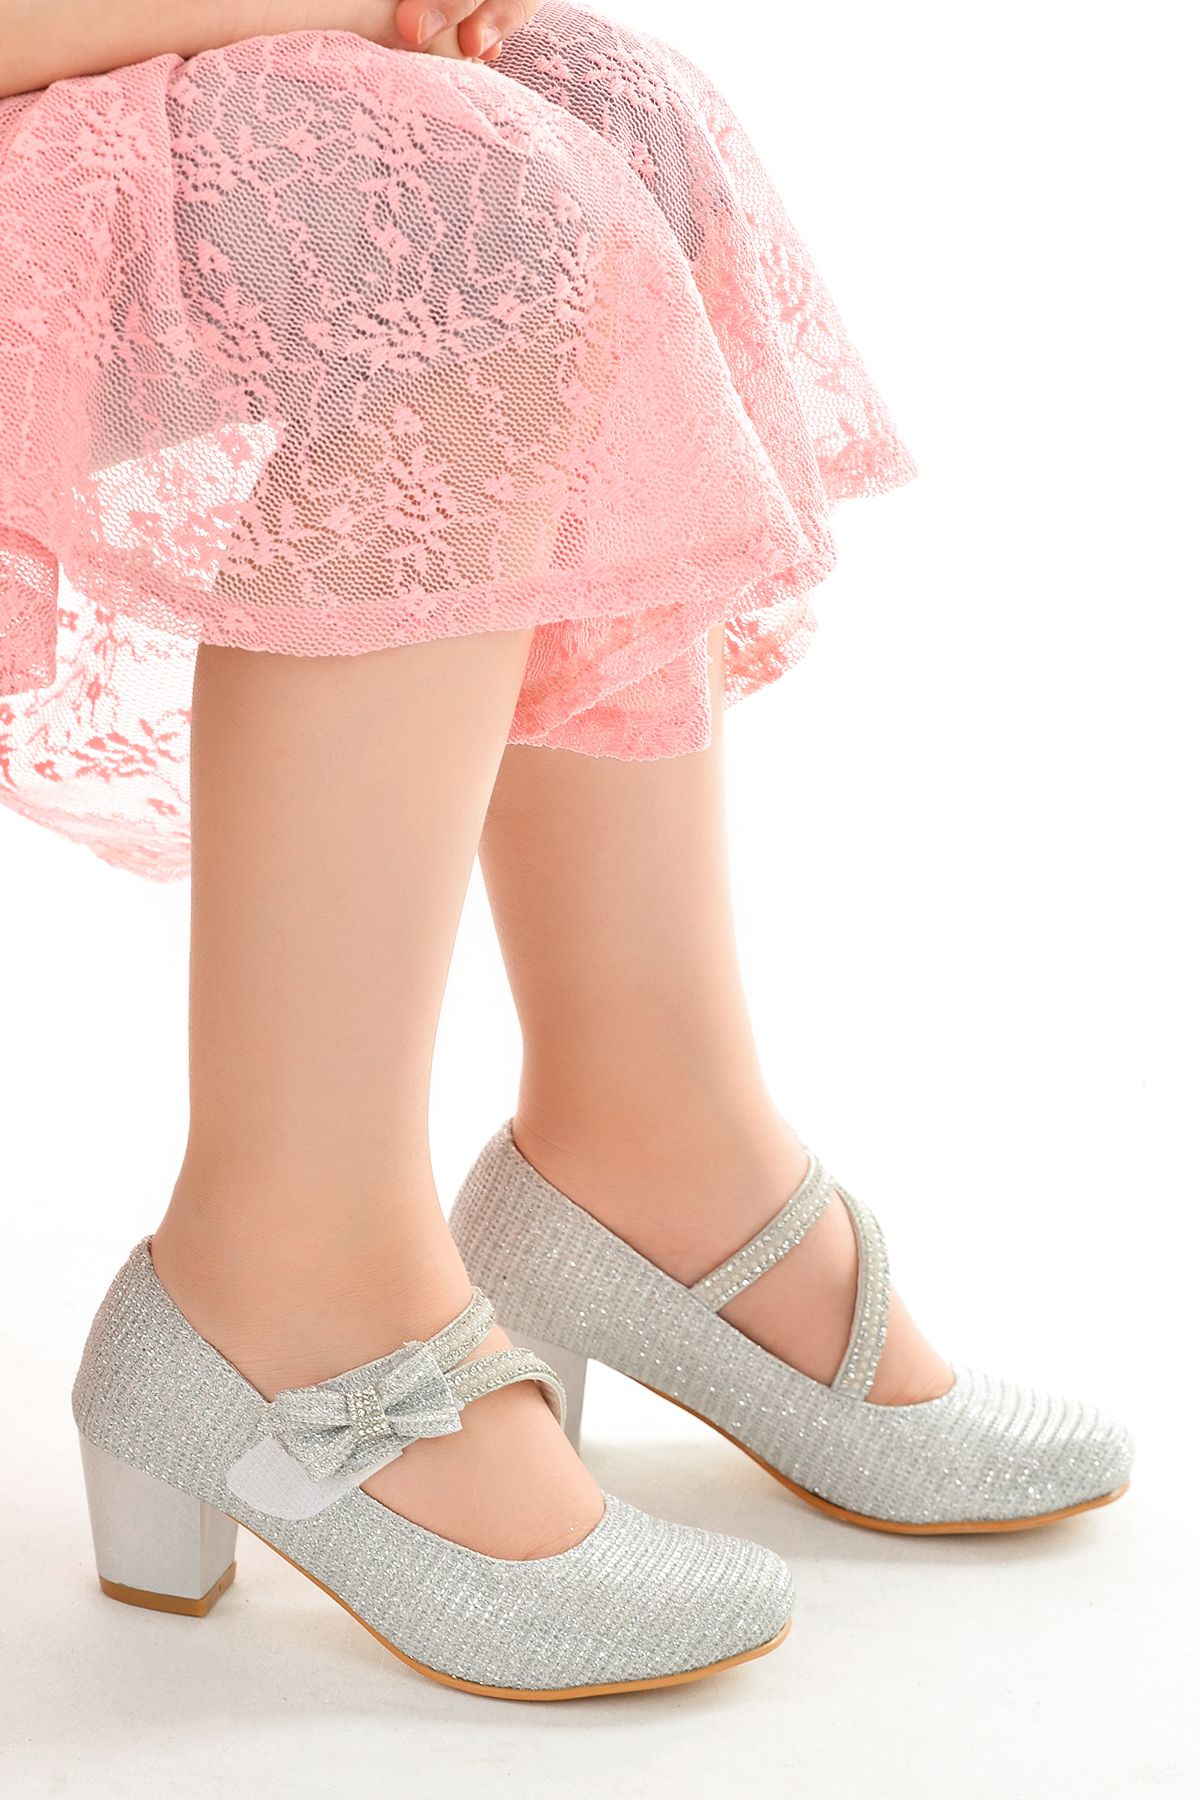 Kiko Kids Kız Çocuk Gümüş Abiye Ayakkabı 4 Cm Topuklu Simli Ayakkabı Bilekten Bantlı Özel Gün Ve Gece